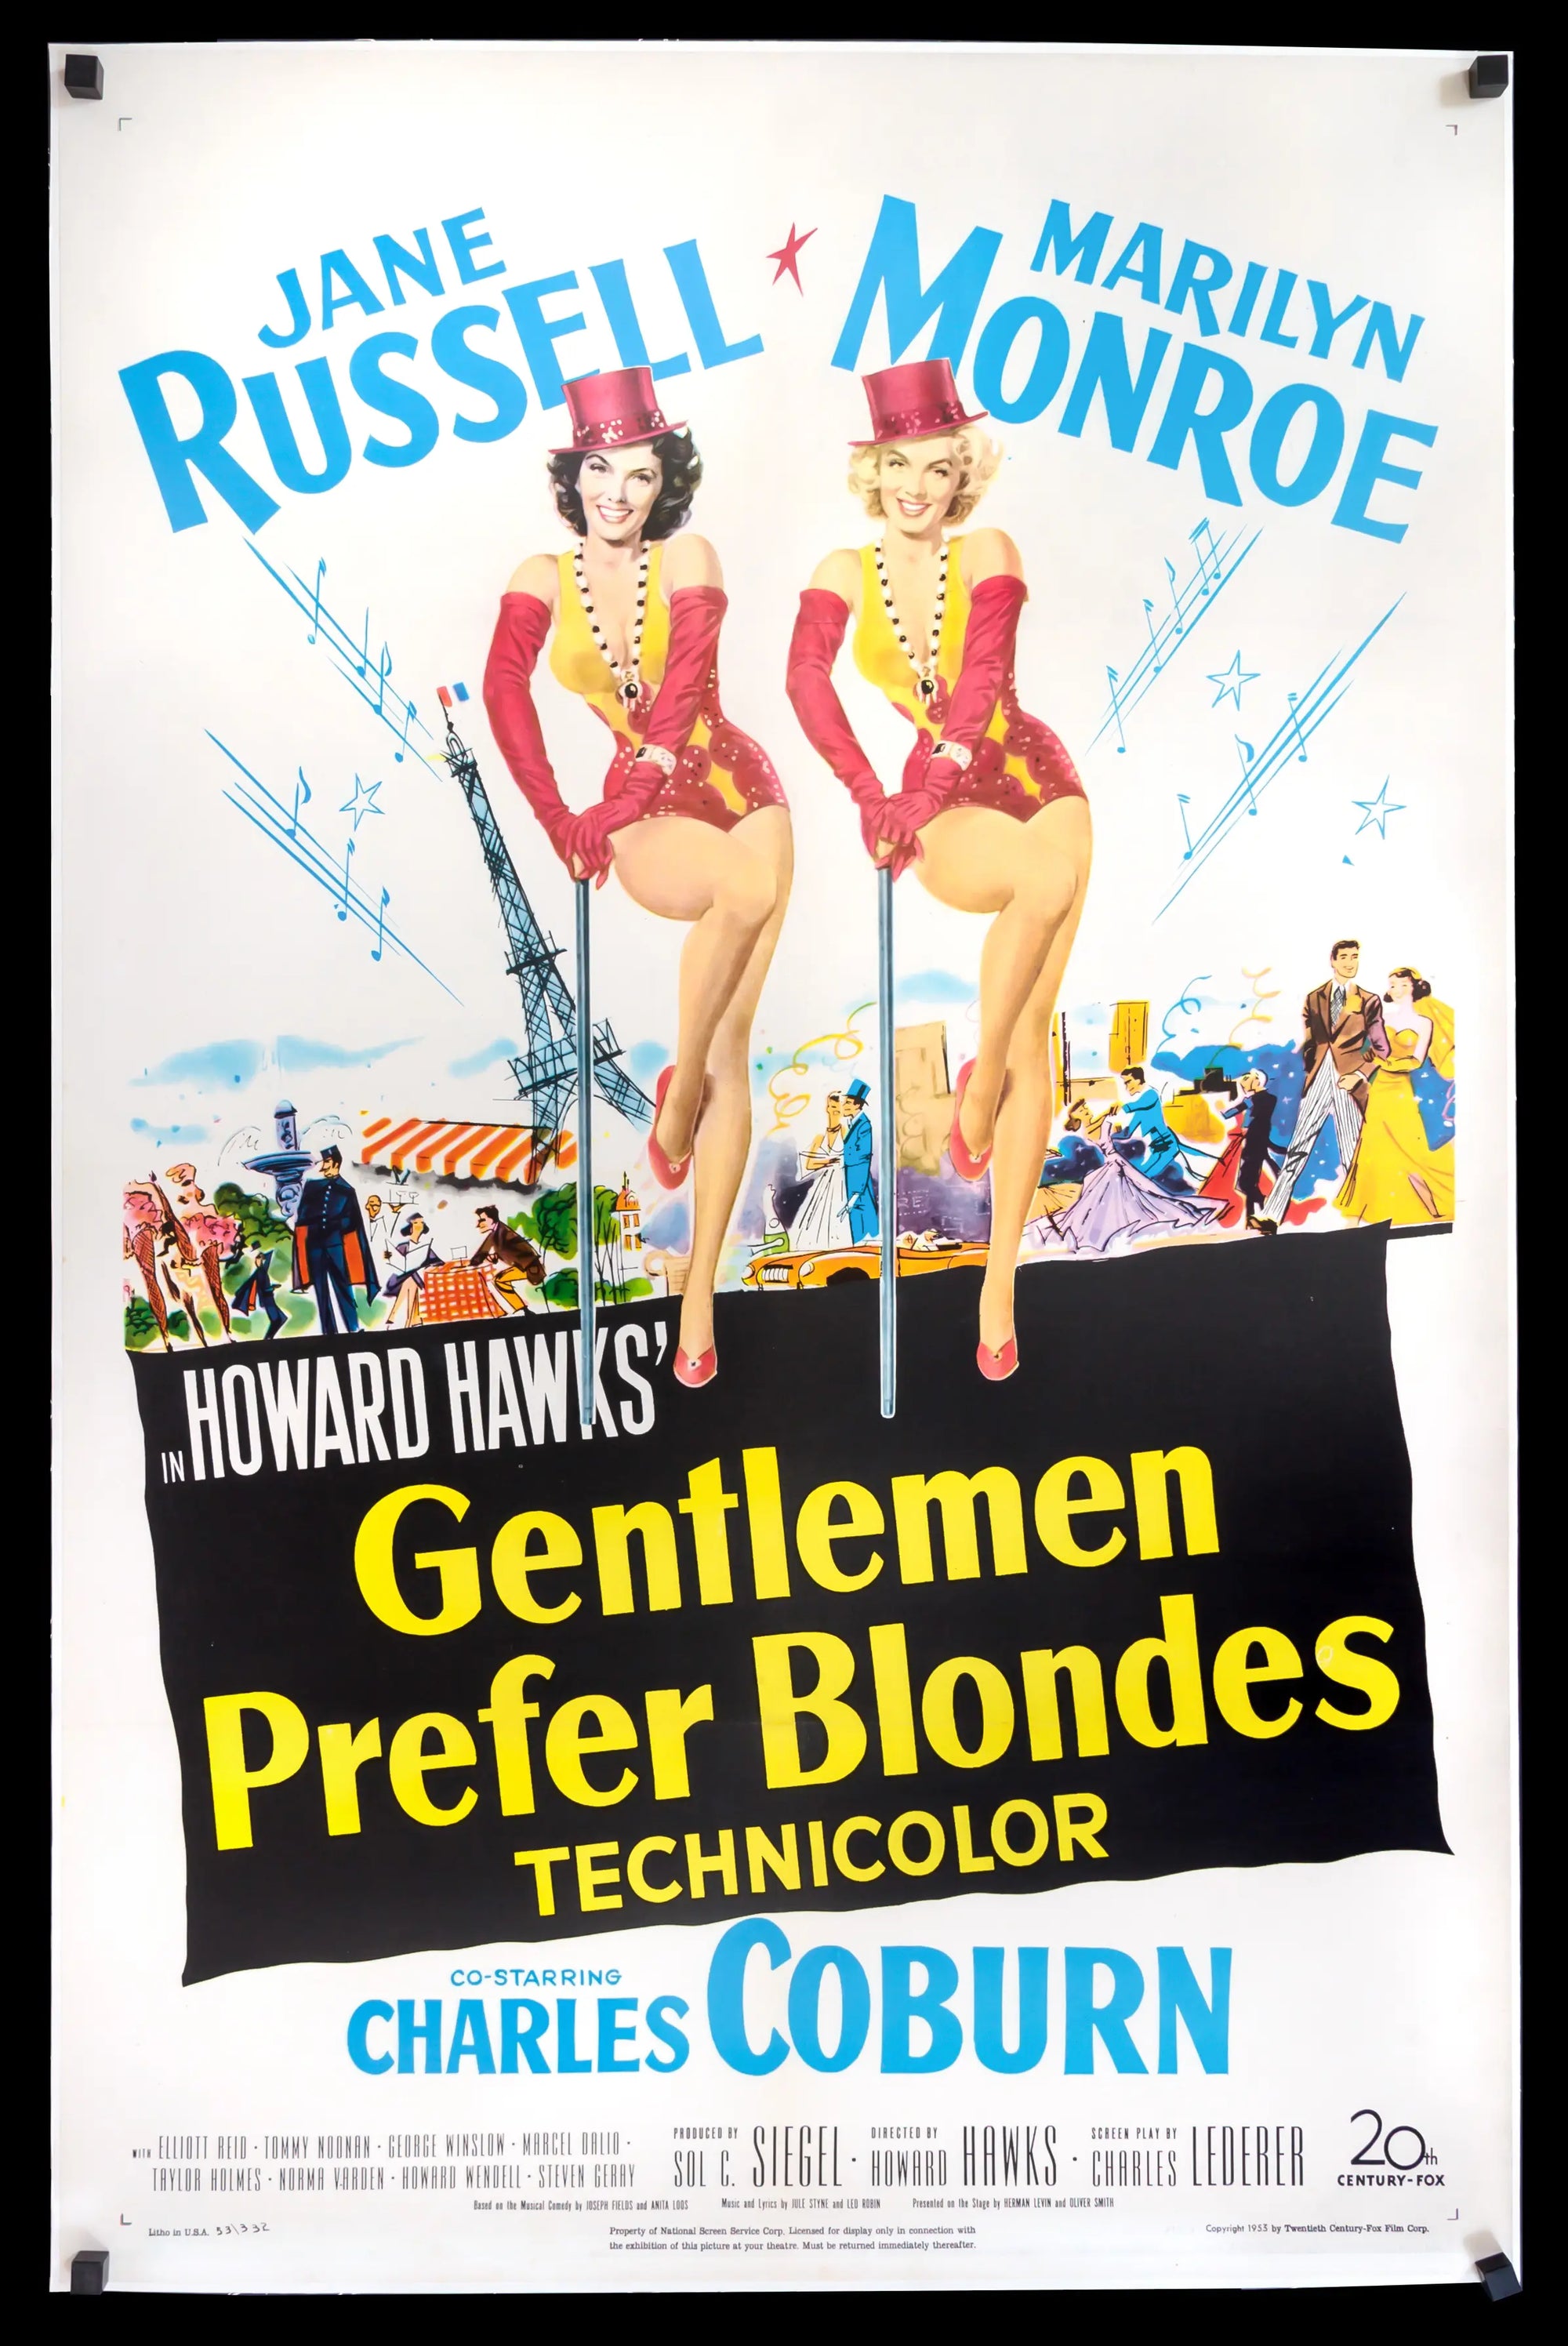 Gentlemen Prefer Blondes (1953) original movie poster for sale at Original Film Art